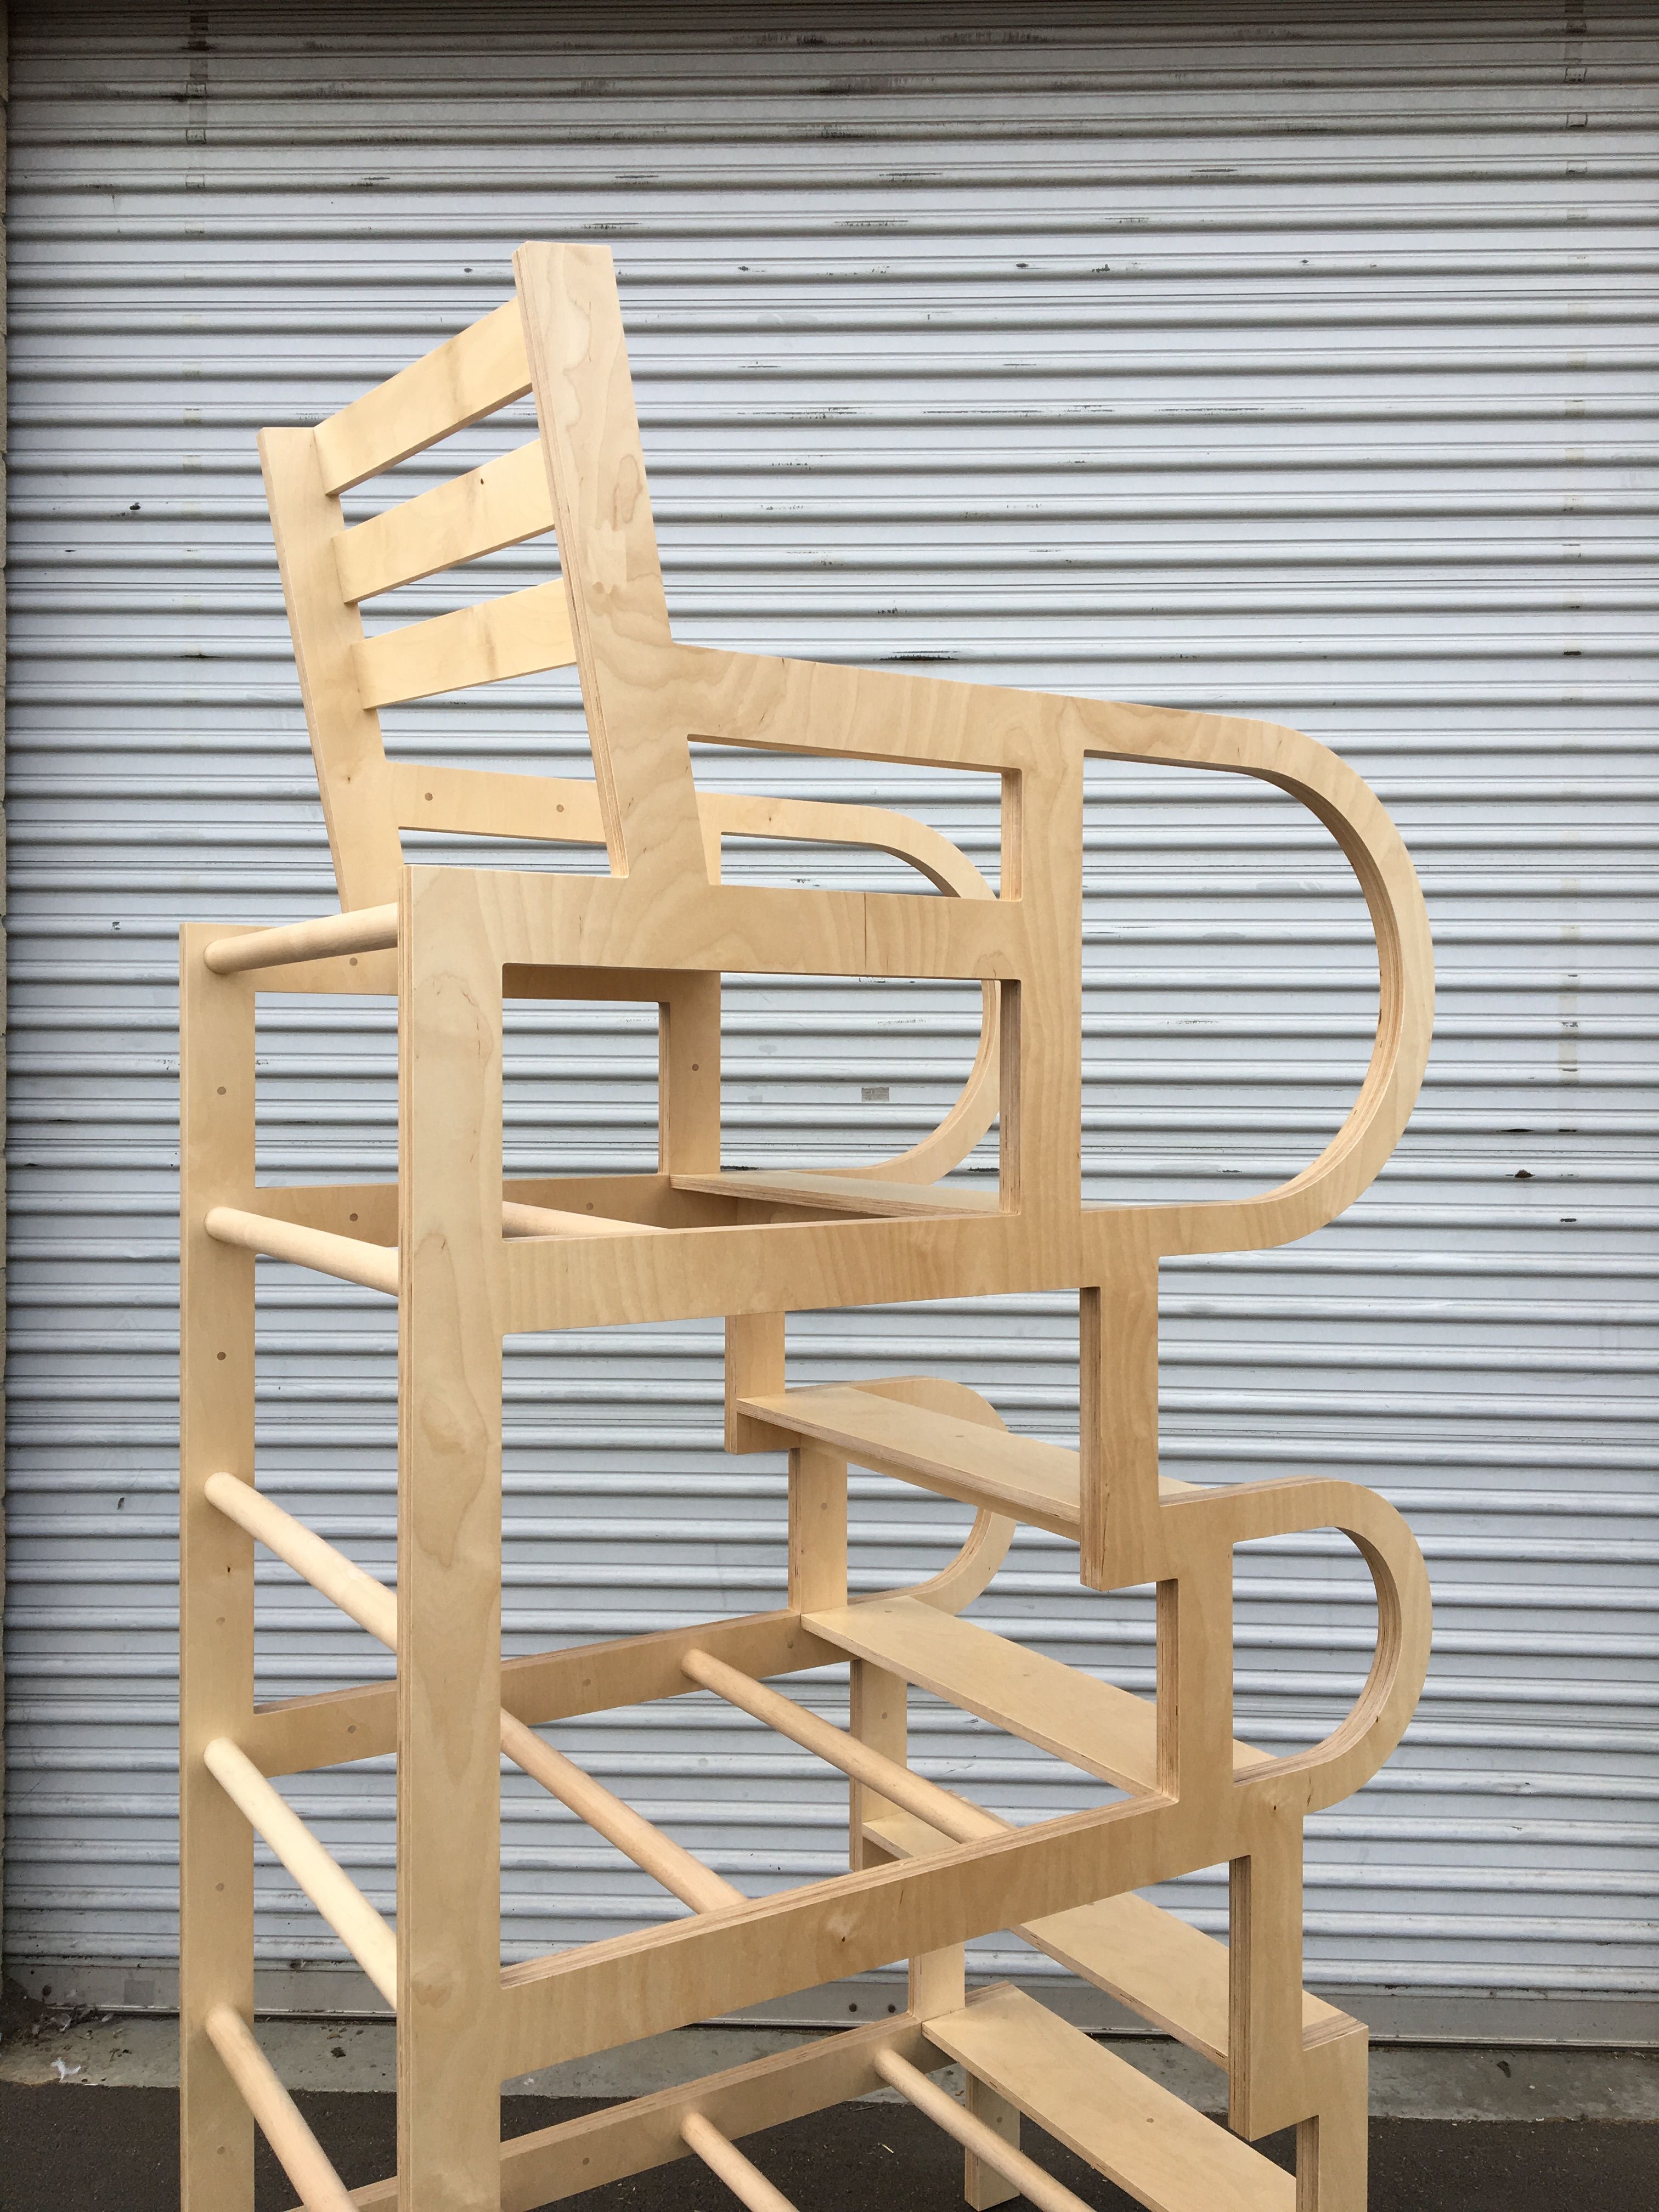  Climbable Chair - Owl Bureau x Adidas / Abbott Kinney Festival product image 12